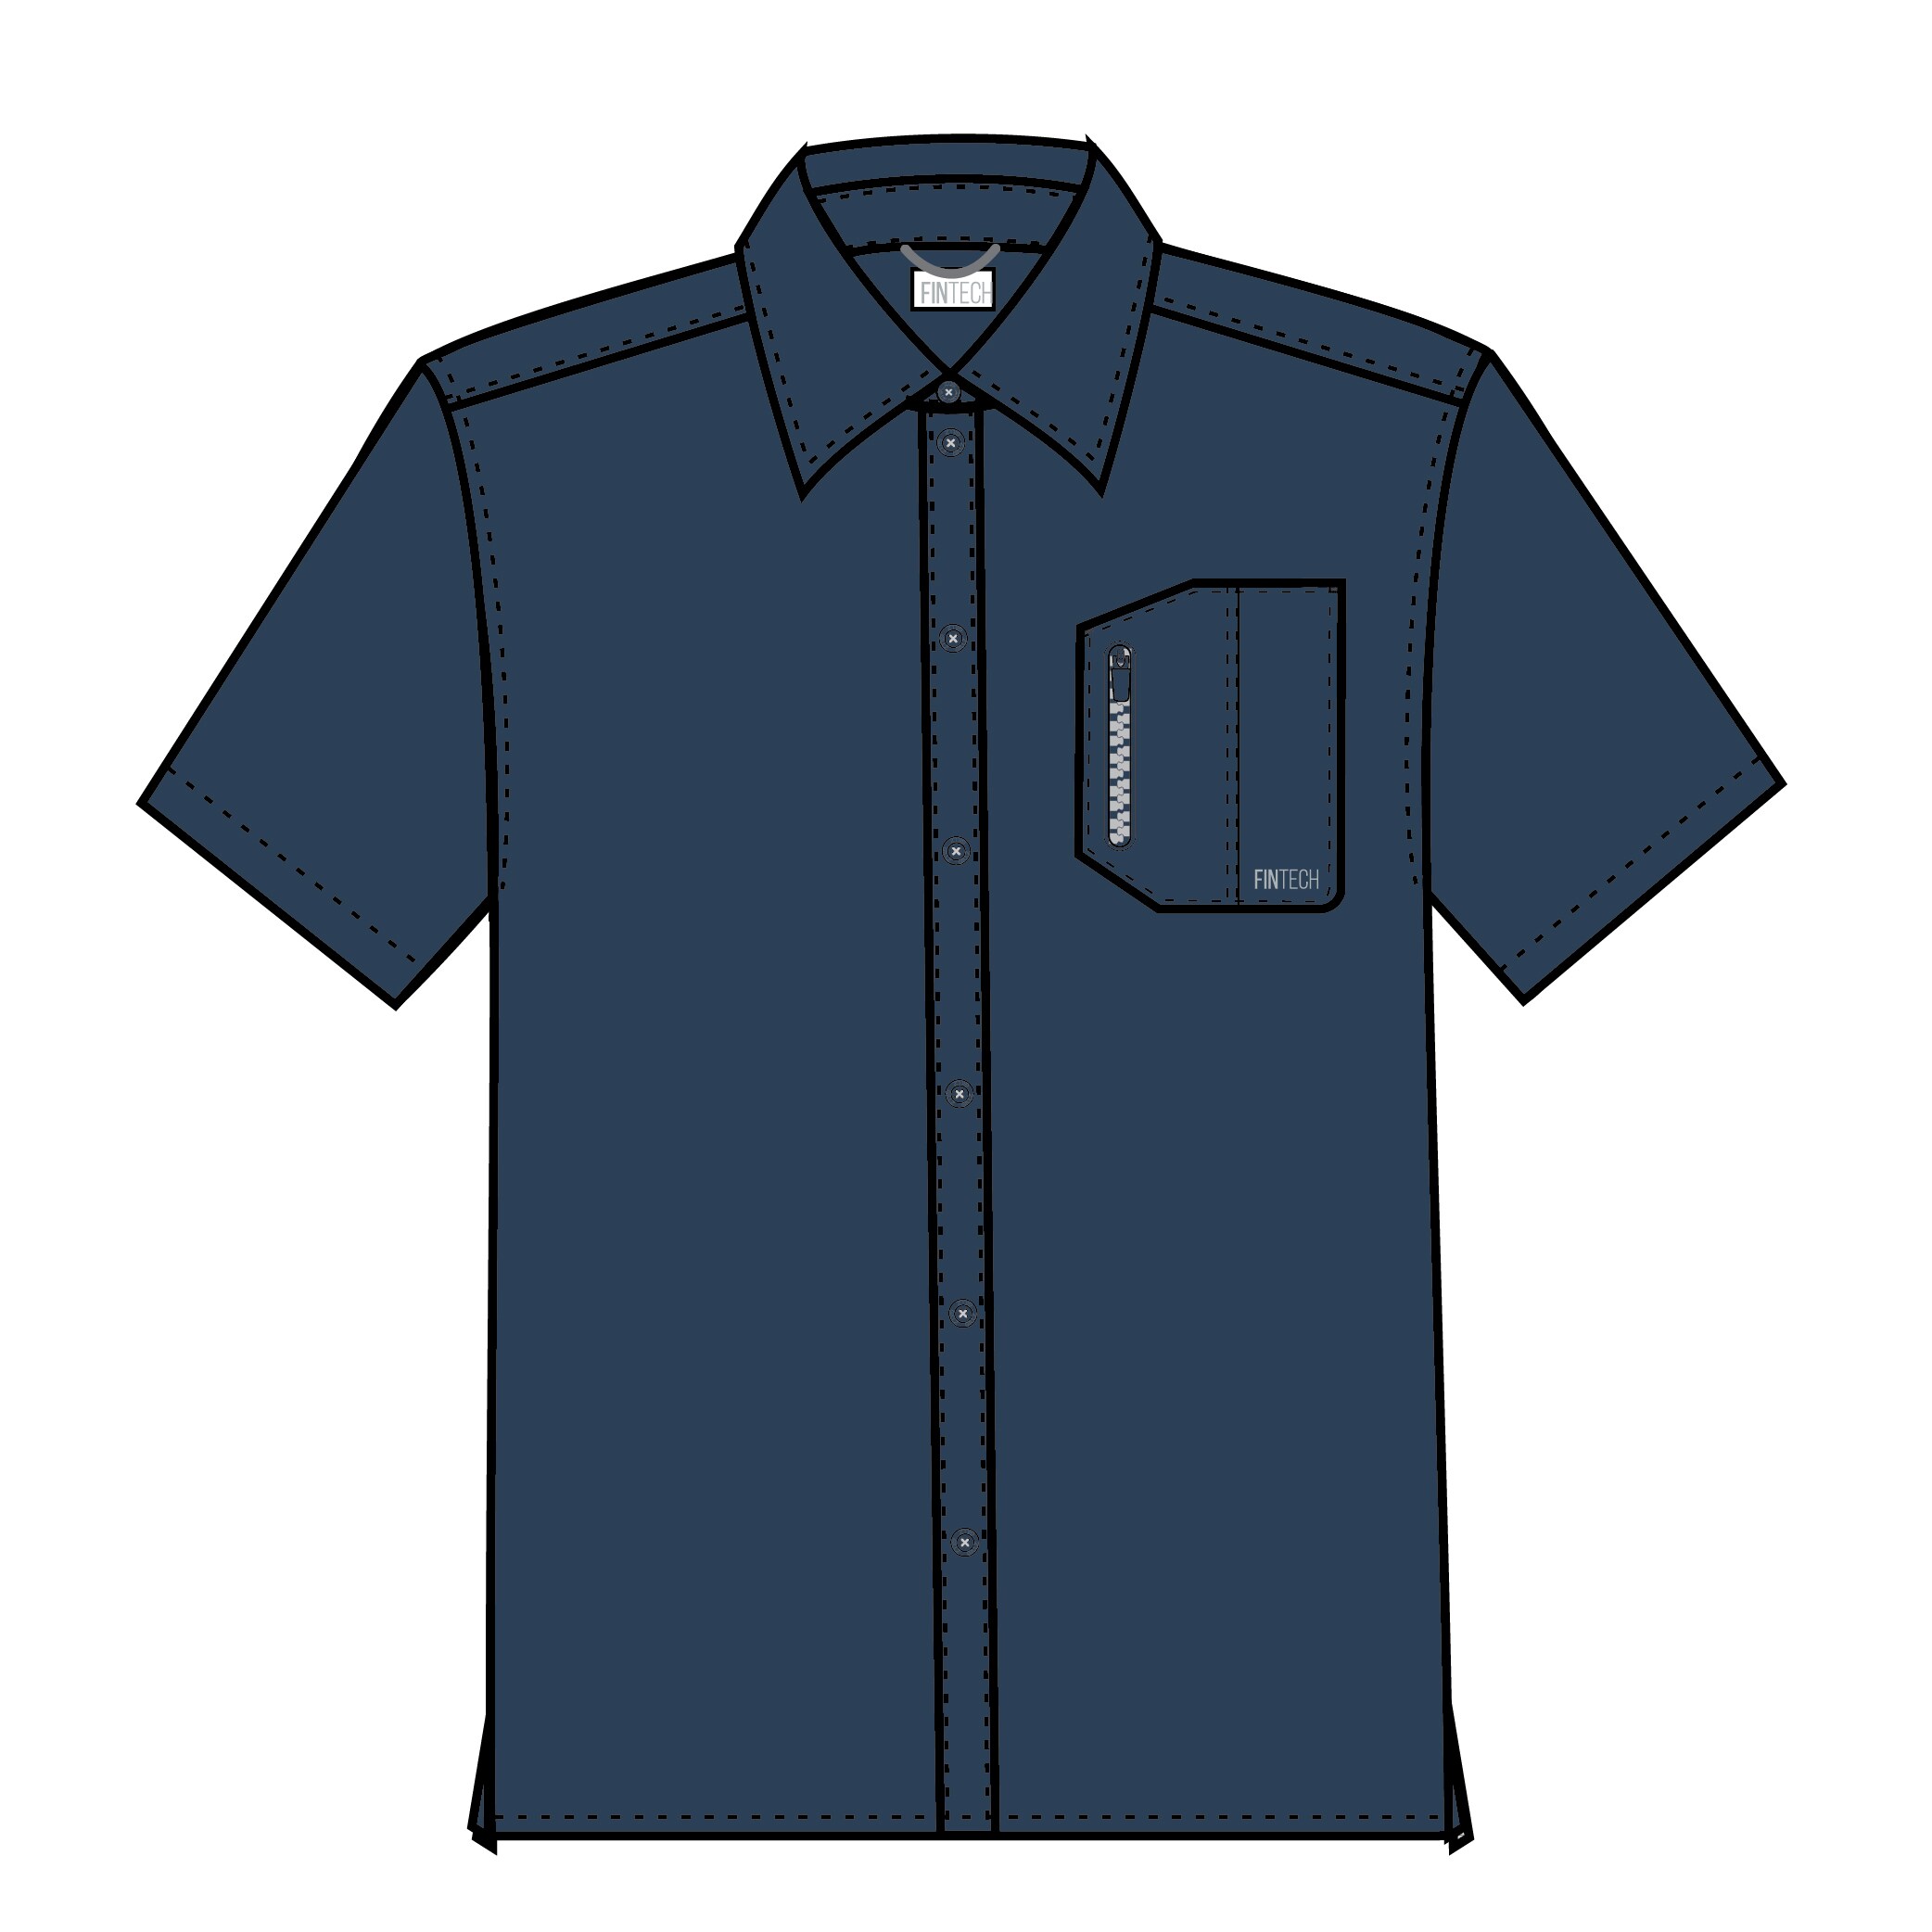 FINTECH Men's Woven Short Sleeve Solid Button-down Shirt (Large